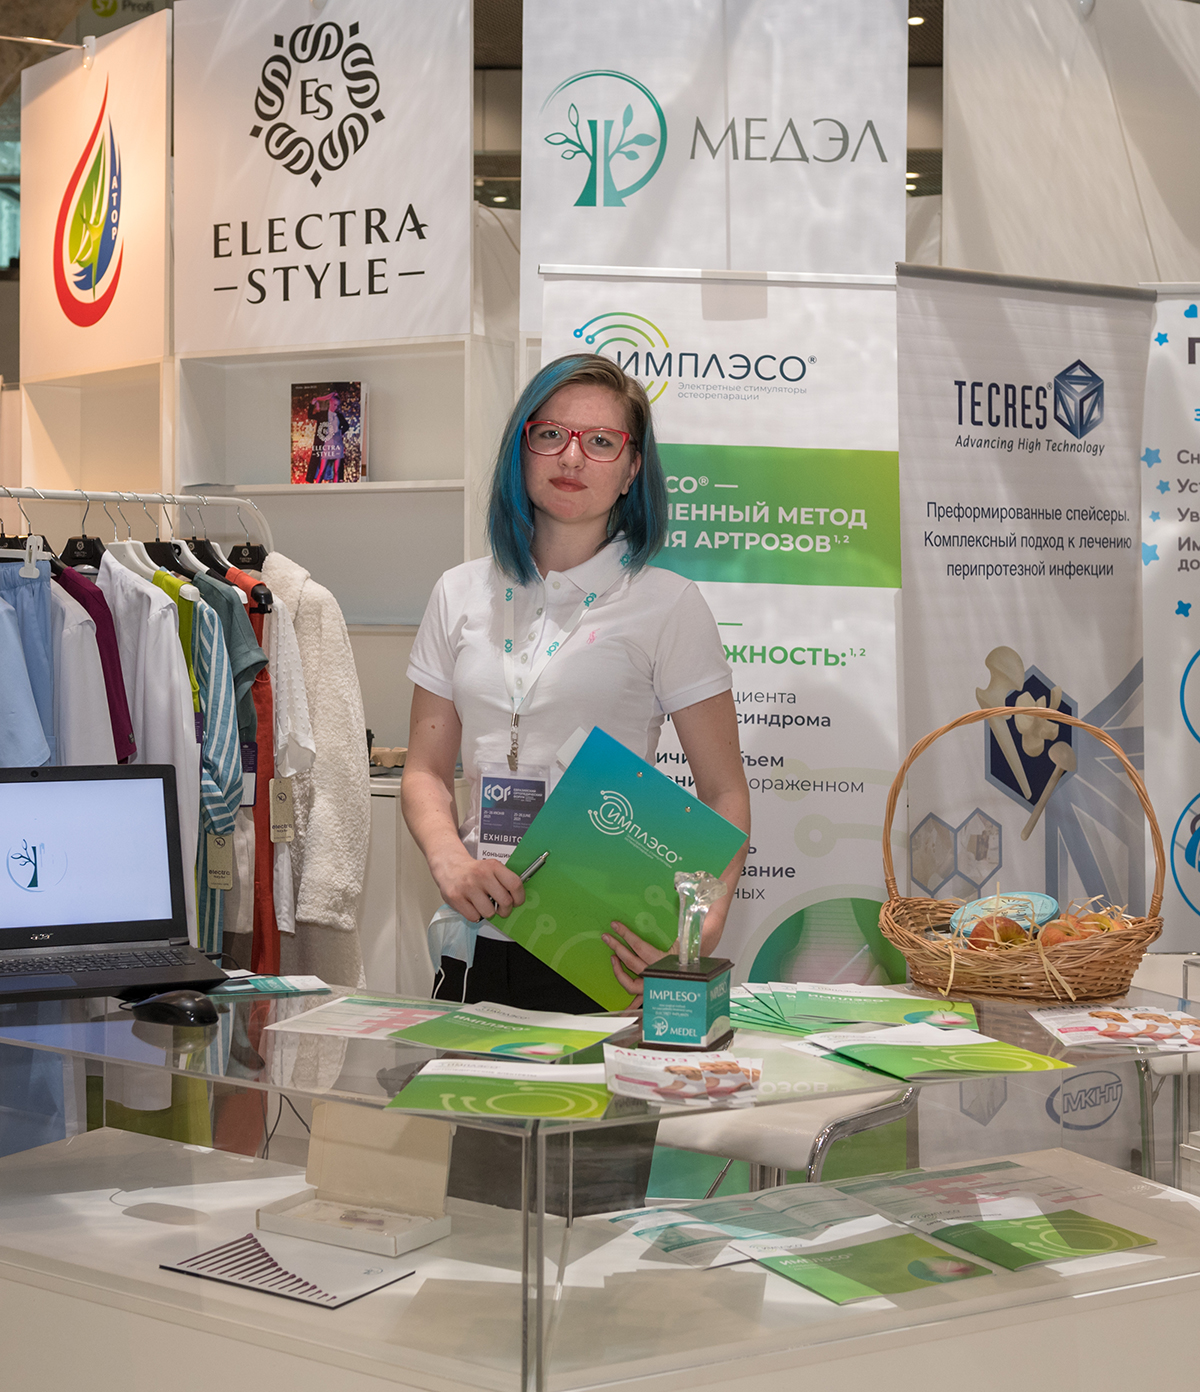 25-26 июня компания «Медэл» приняла участие в «Евразийском Ортопедическом Форуме – 2021», который прошел в Москве в Технопарке Сколково